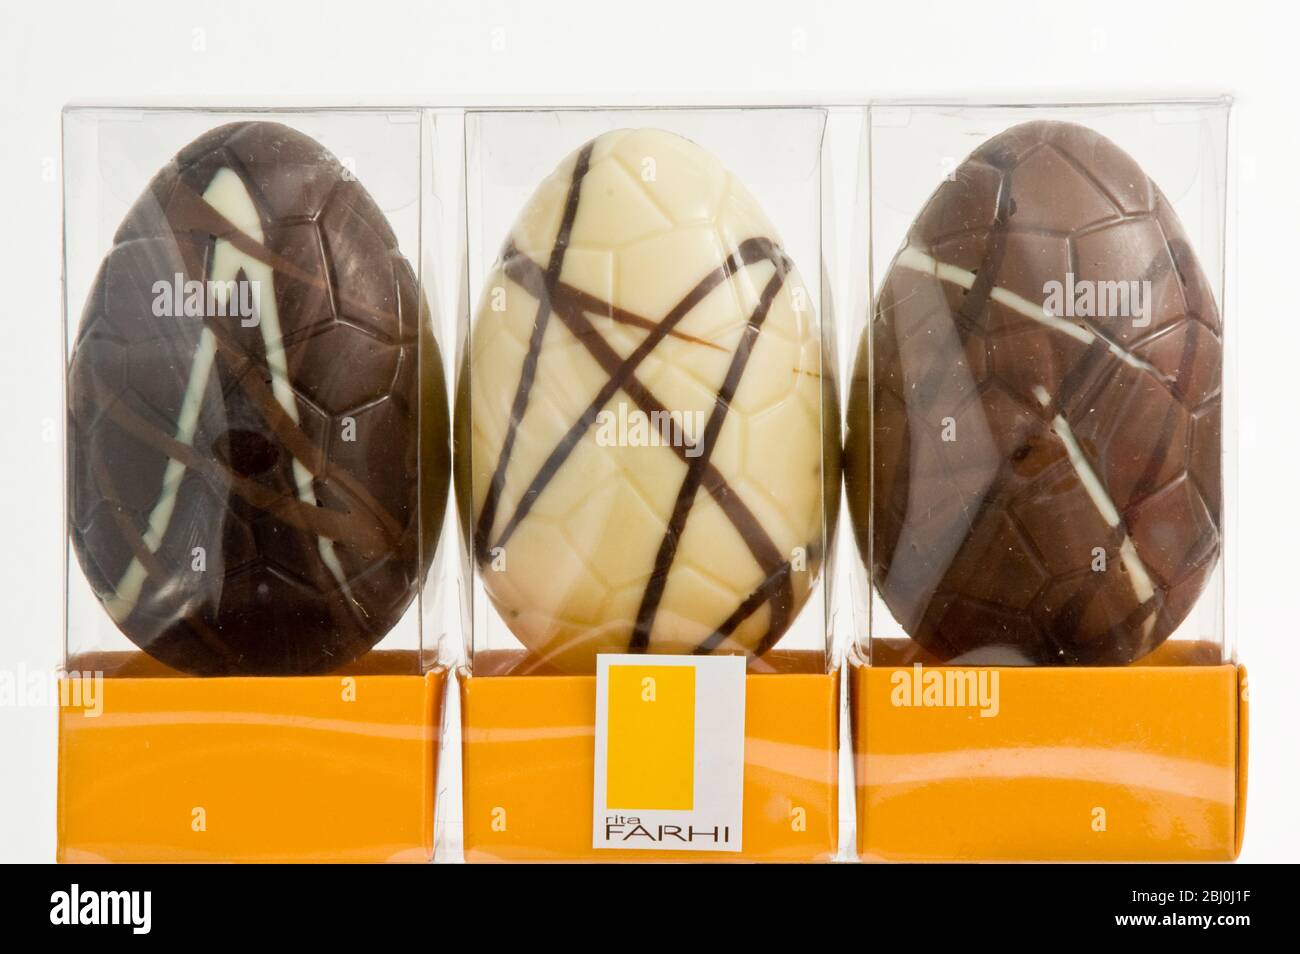 Drei ähnliche Schokoladen-Ostereier - einfach, Molke und Milchschokolade, in Zellophan-Boxen. - Stockfoto